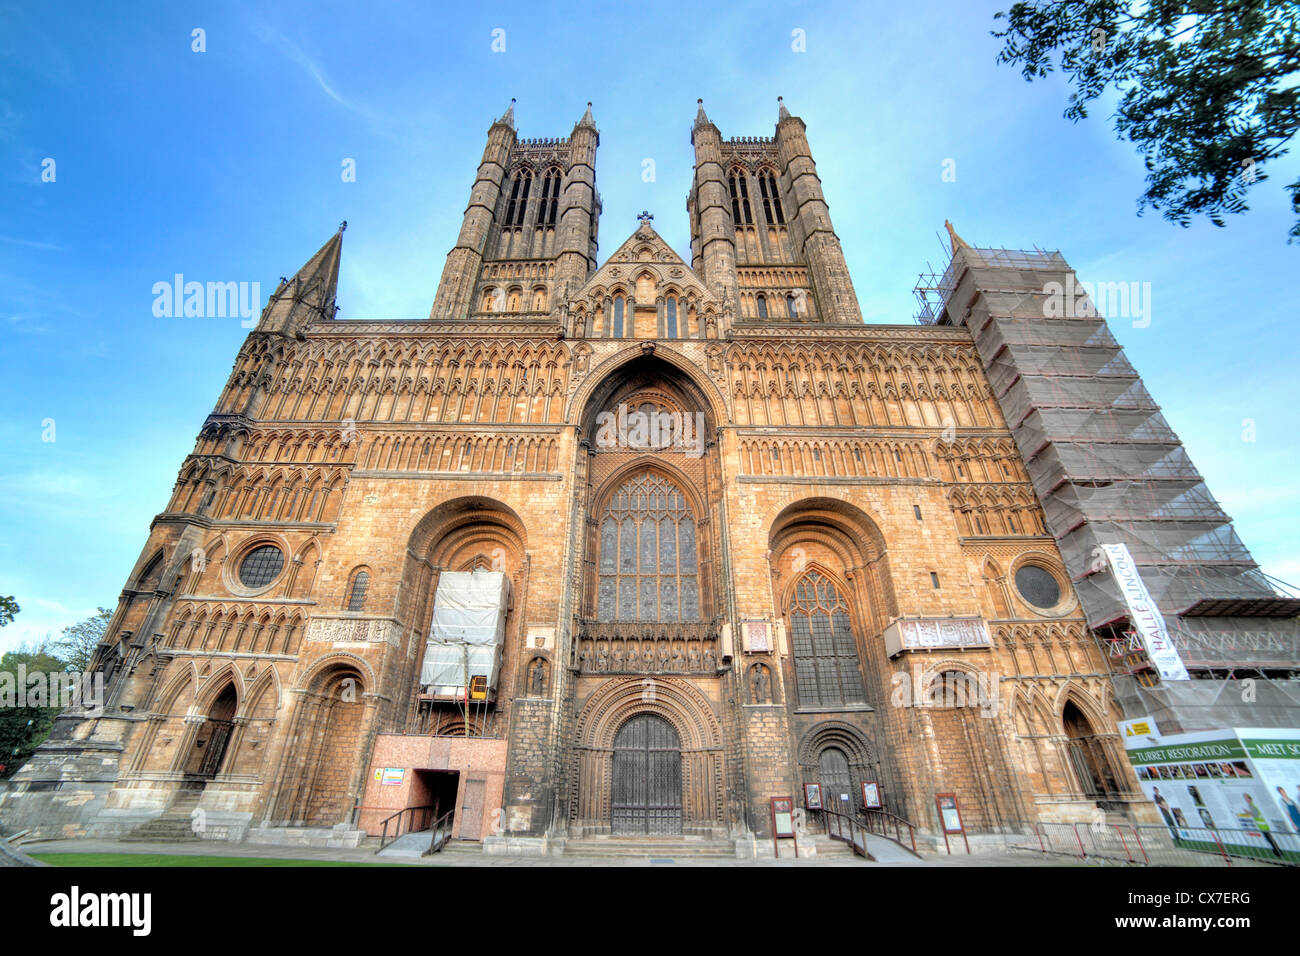 La fachada occidental de la Catedral de Lincoln, Lincoln, Lincolnshire, Inglaterra, Reino Unido. Foto de stock